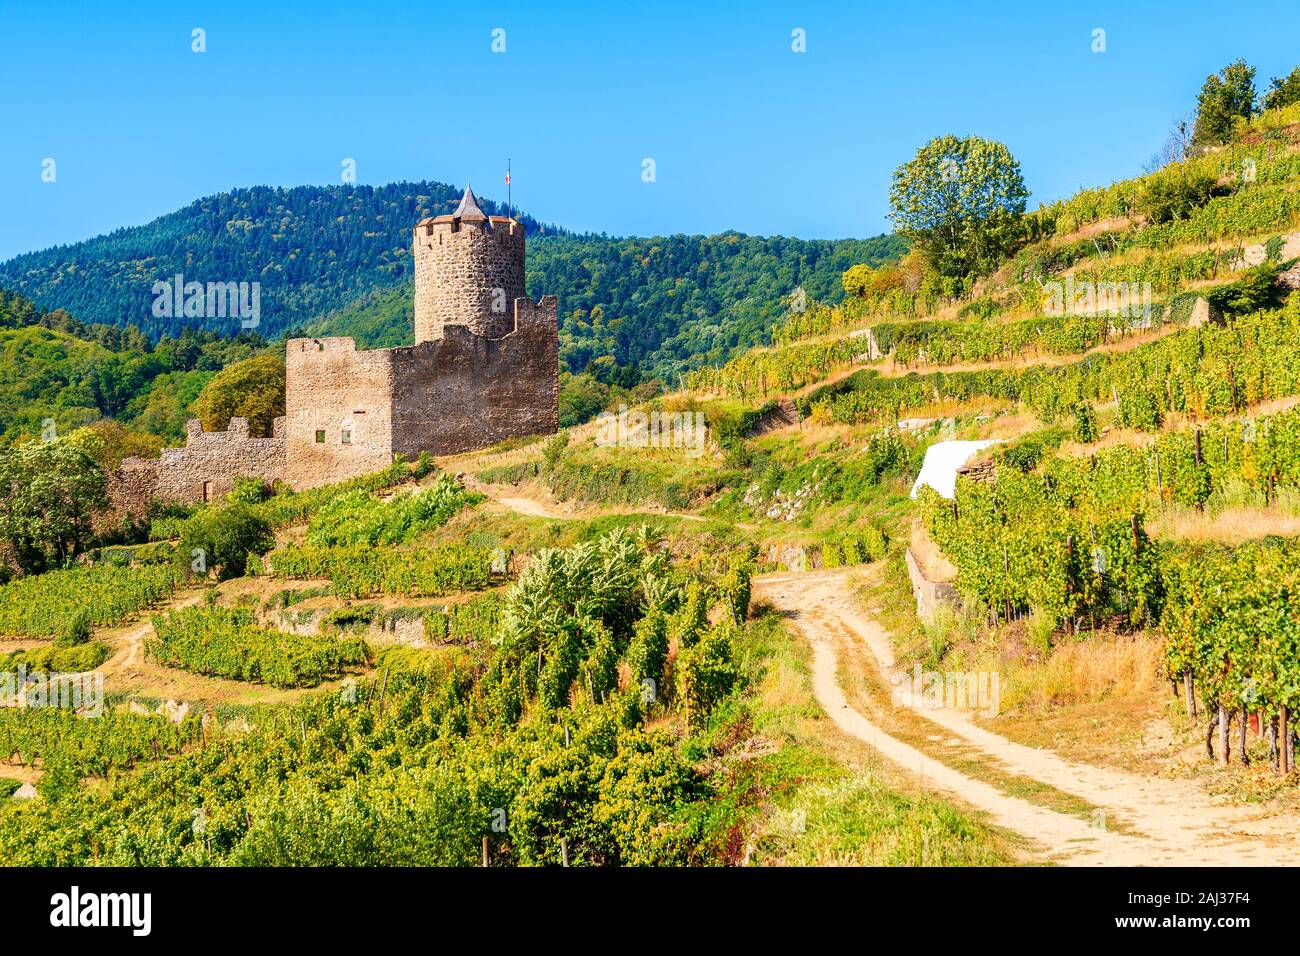 Mittelalterliche Burg auf dem Hügel zwischen Weinbergen in Kaysersberg Dorf auf der elsässischen Weinstraße, Frankreich Stockfoto